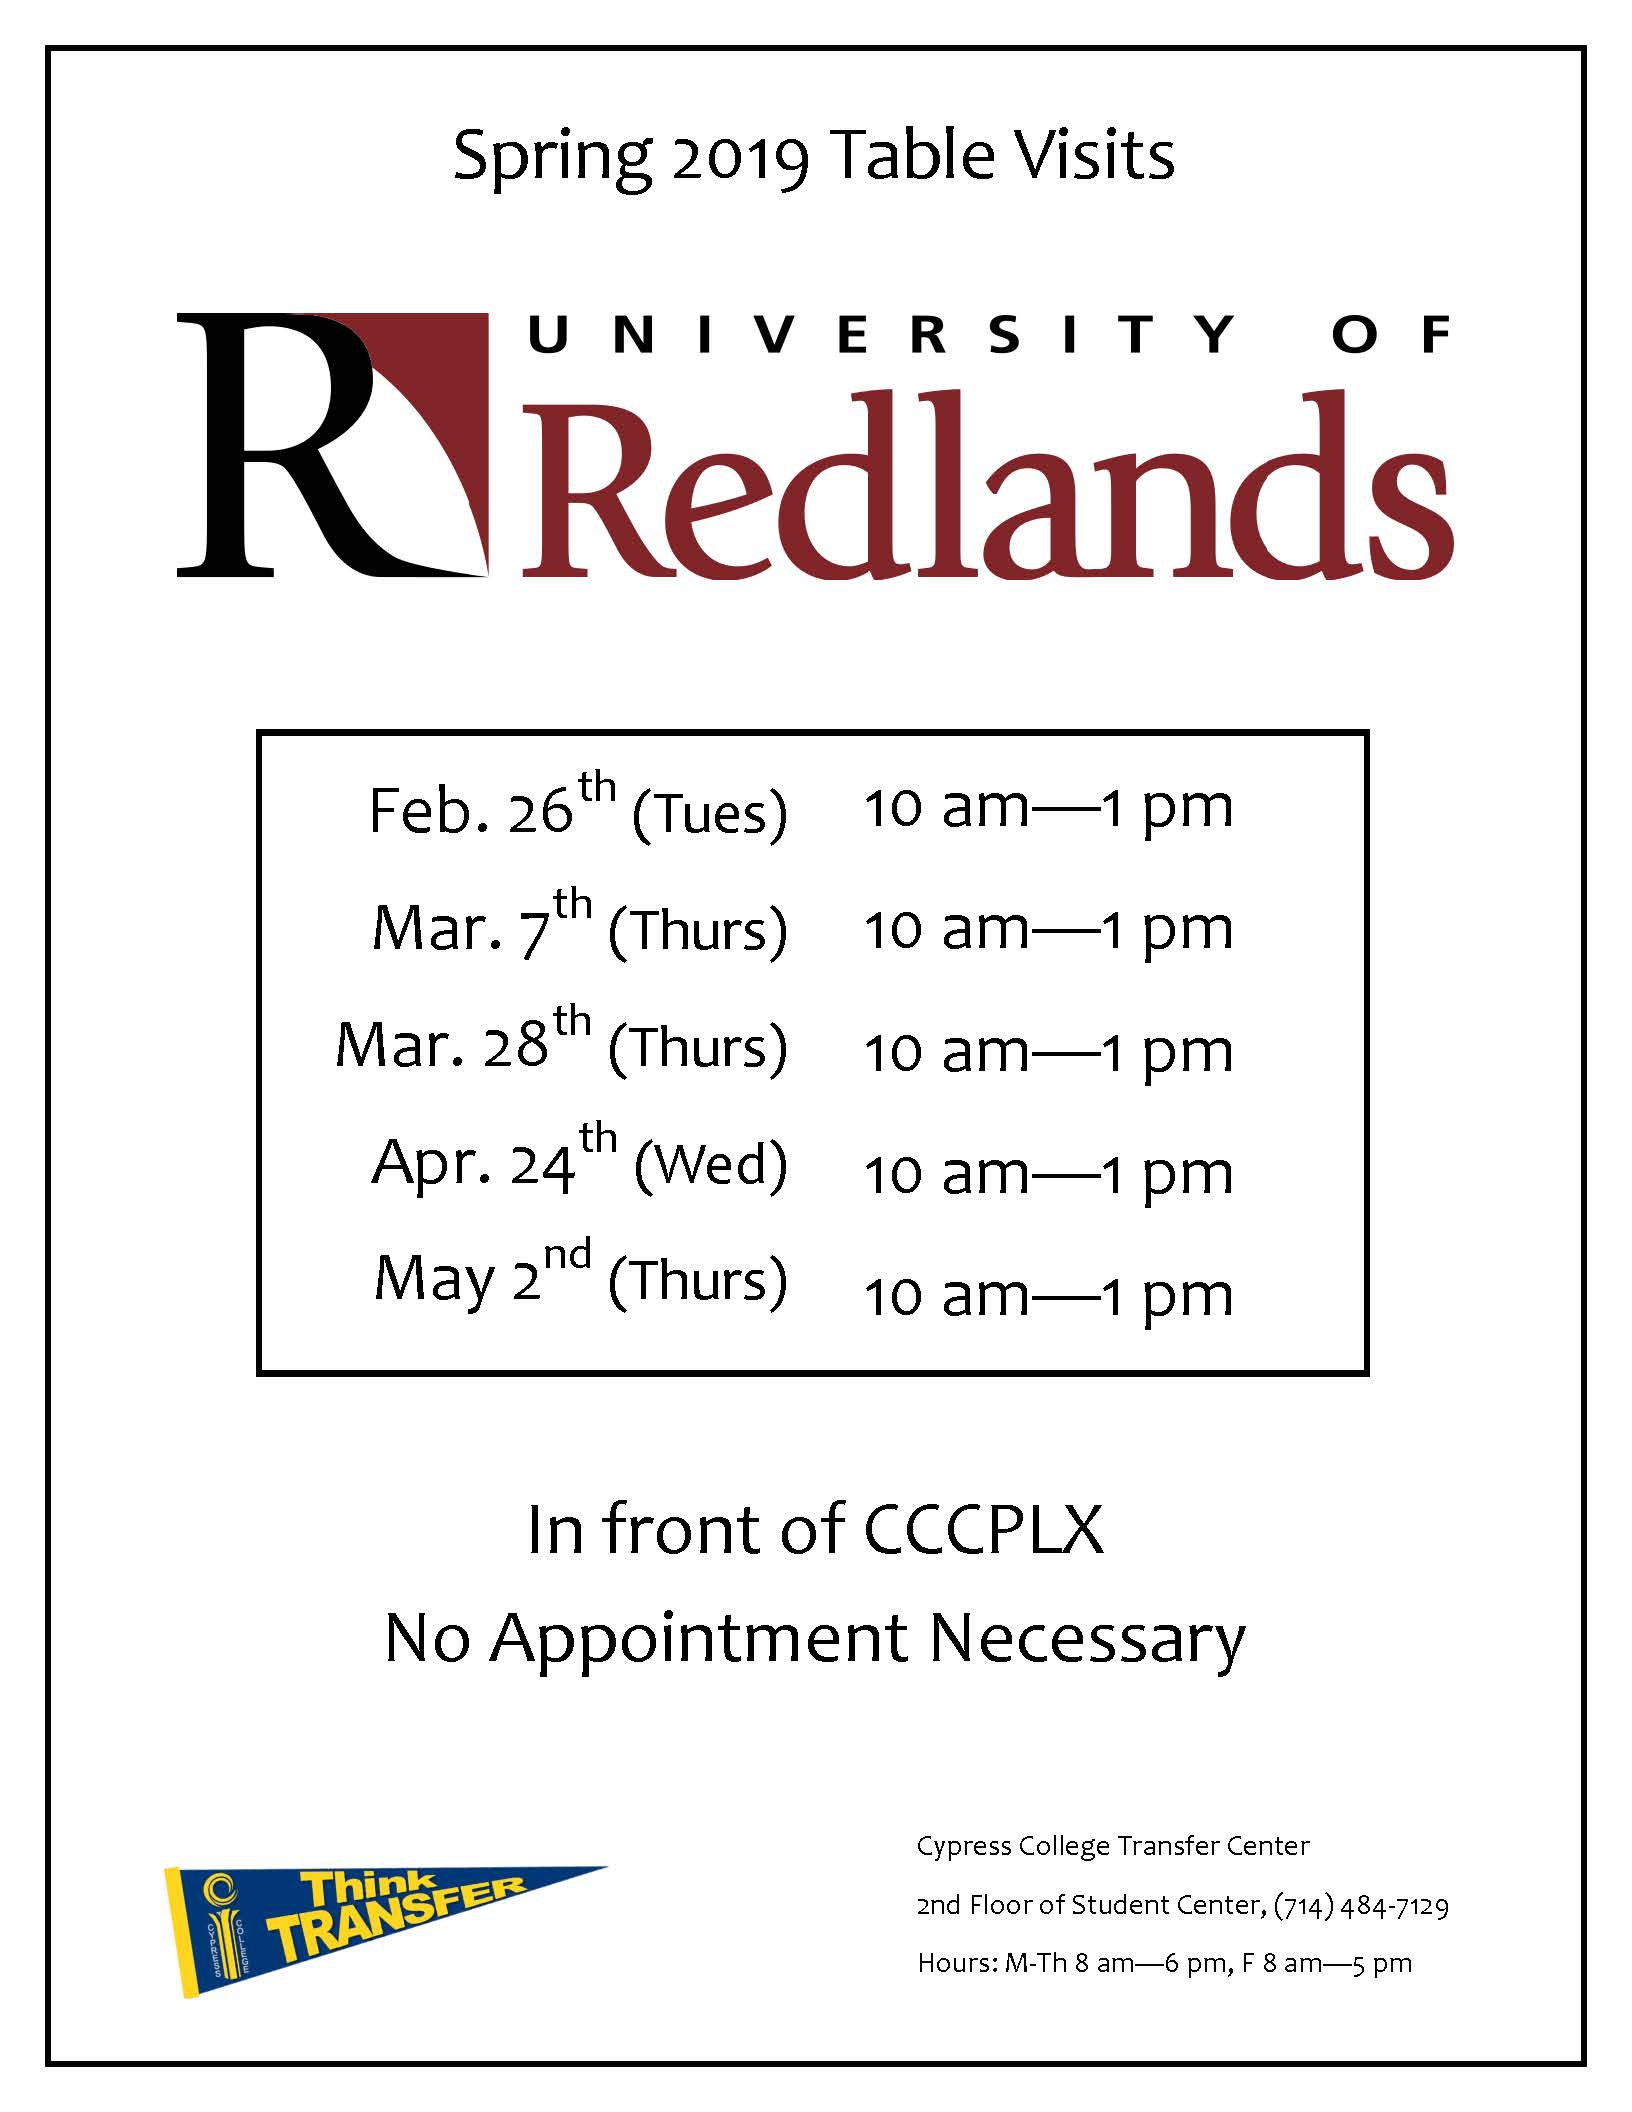 Spring 2019 Table Visits University of Redlands flyer